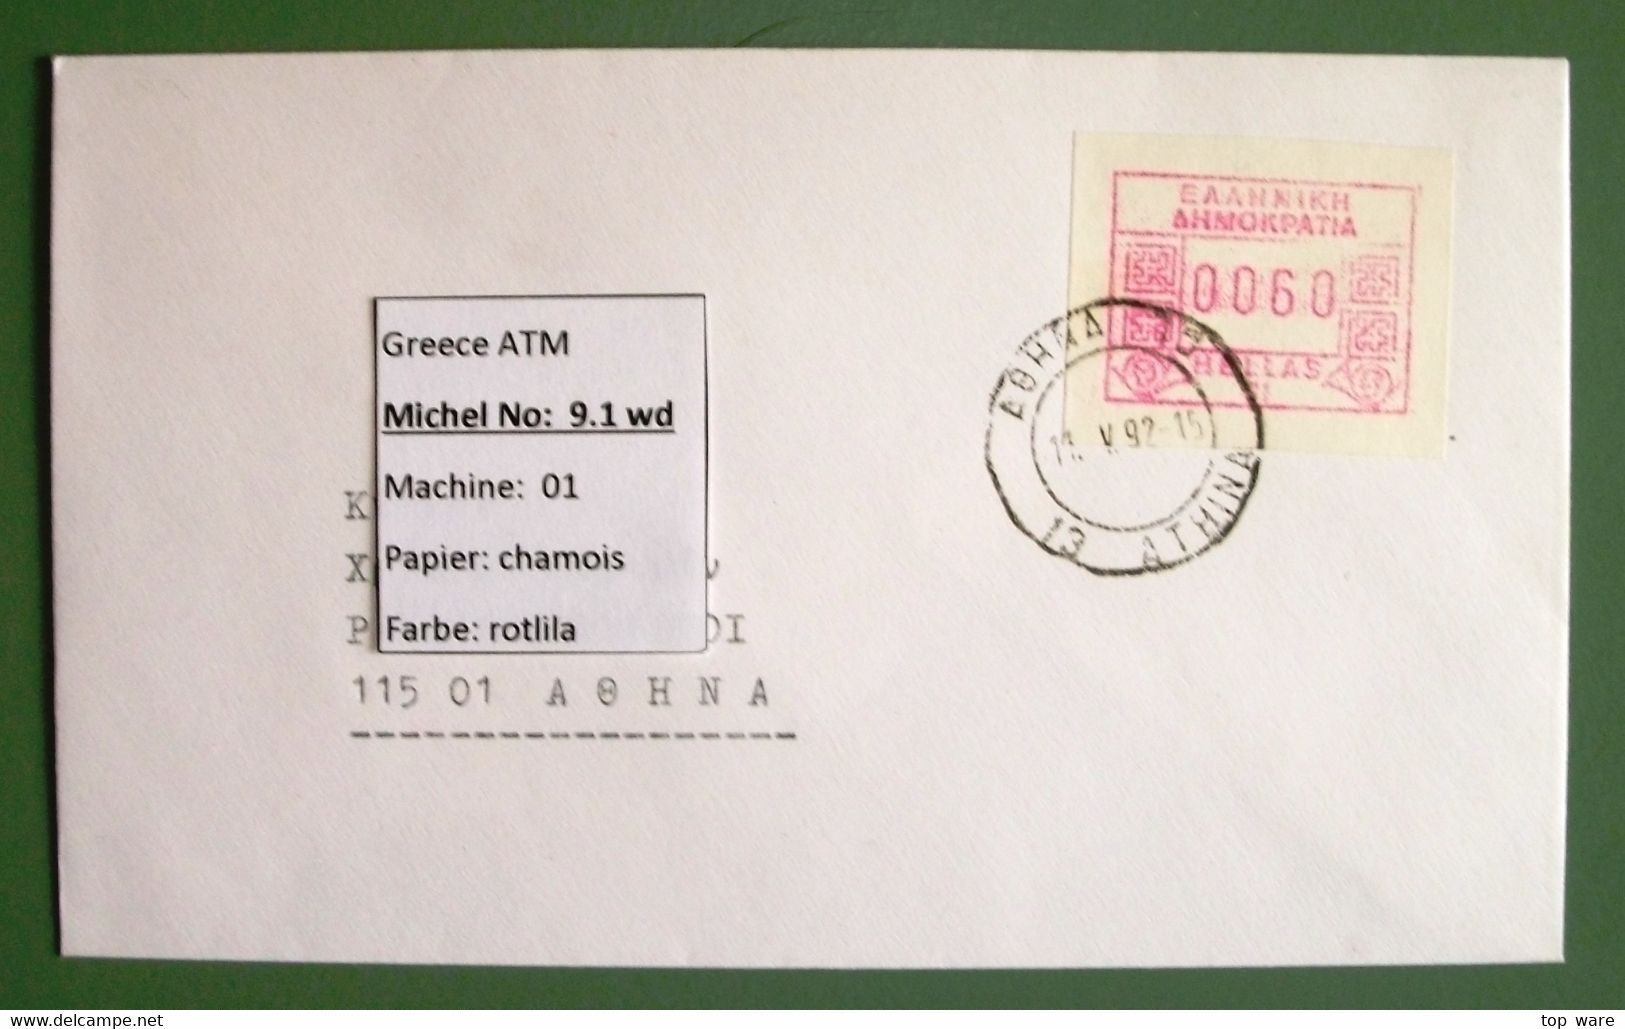 Greece Griechenland ATM 9 / 01-10 / Komplette Briefserie / Frama Etiquetas Distributeur Automatenmarken - Timbres De Distributeurs [ATM]